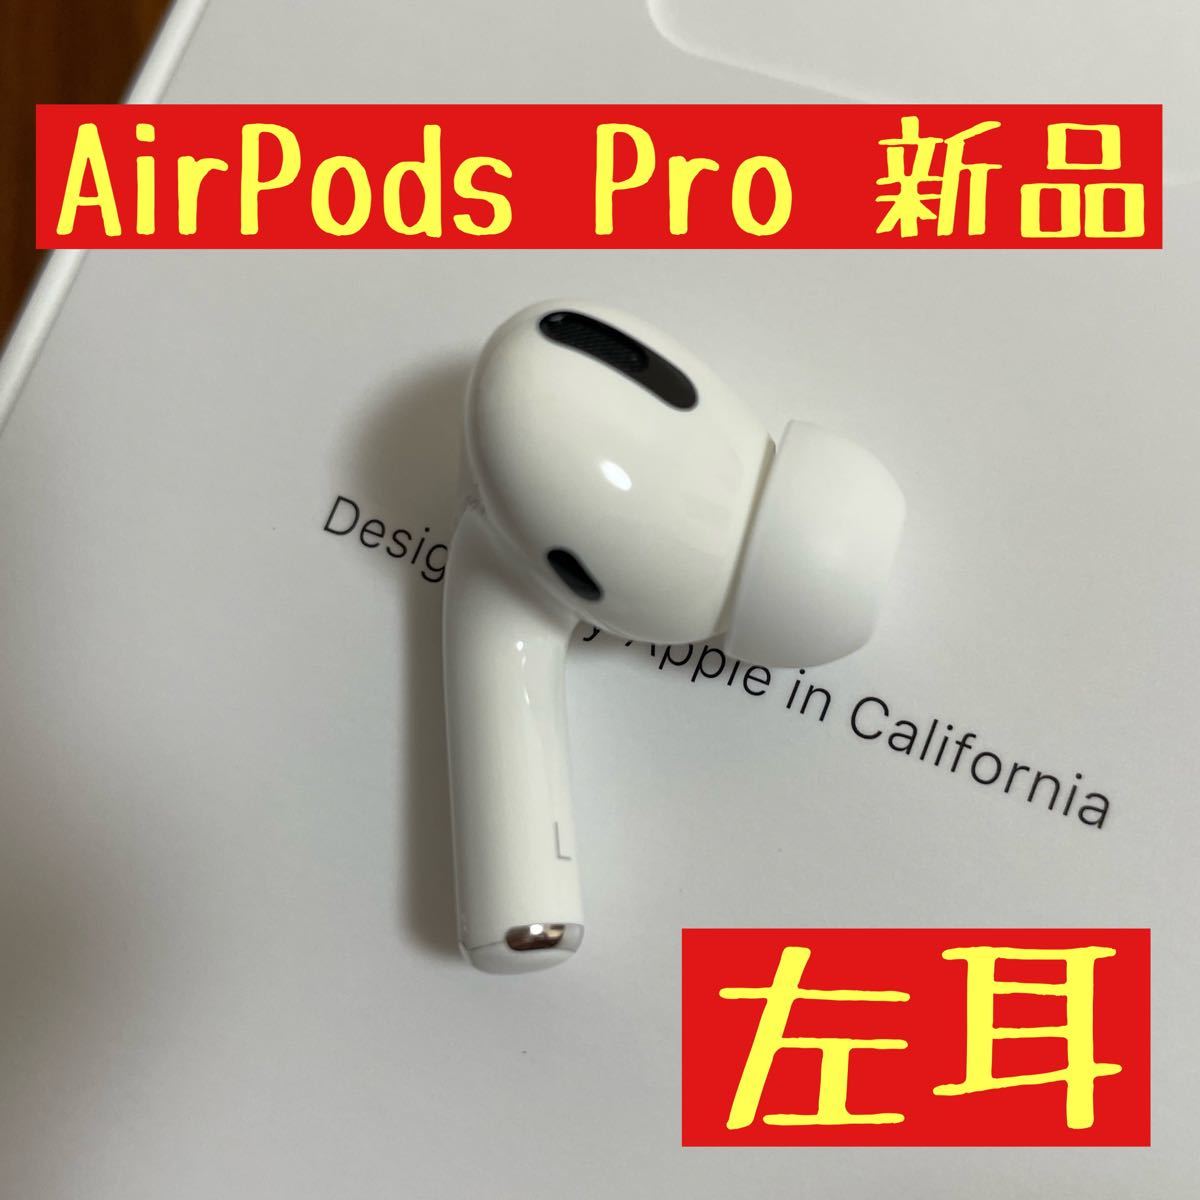 オーディオ機器 イヤフォン 新品 AirPods Pro 左耳のみ 国内正規品 MWP22J/A 片耳 